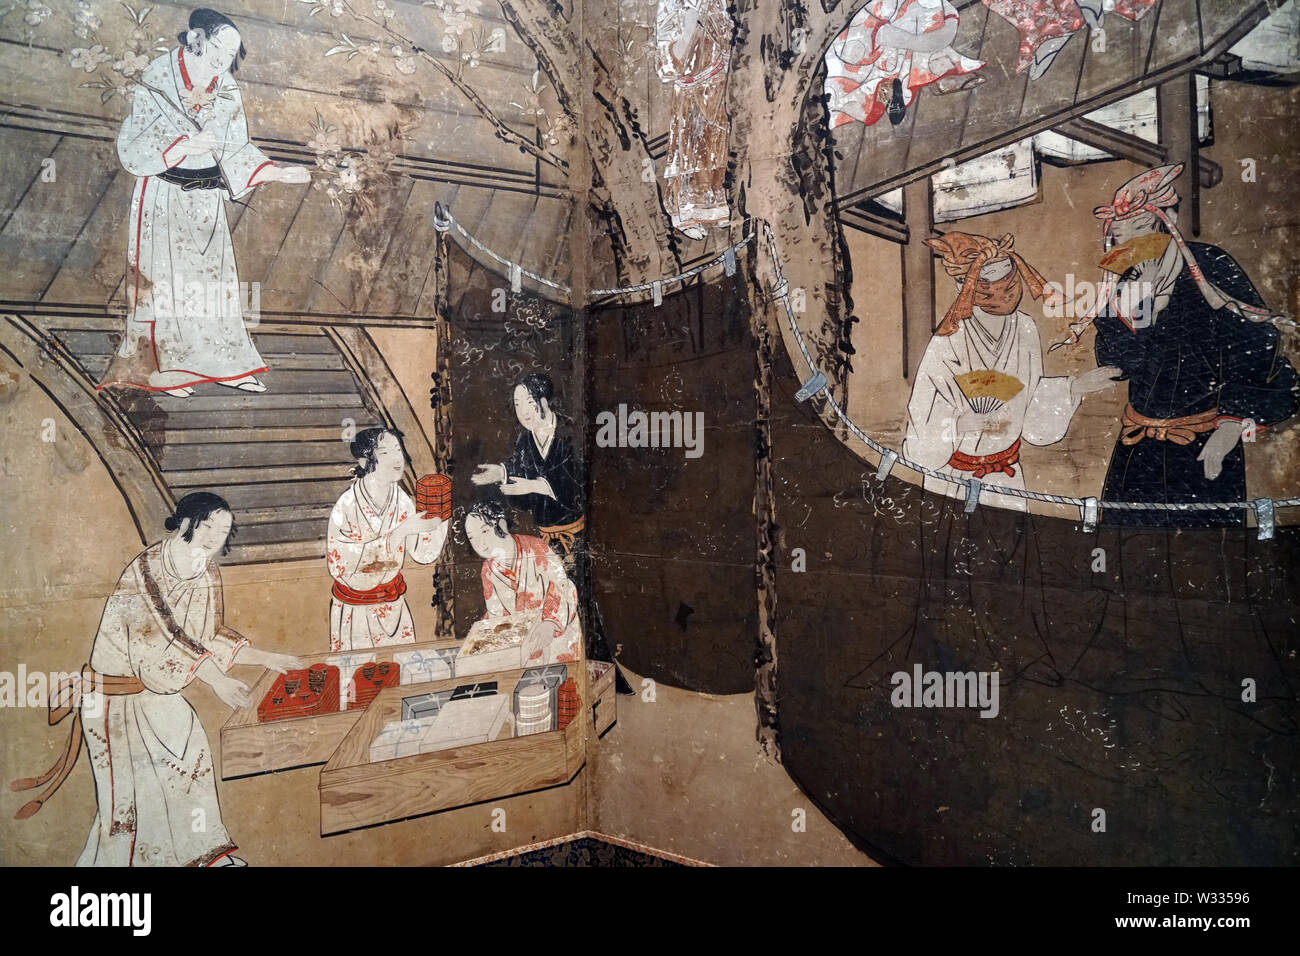 Il divertirsi sotto la fioritura dei ciliegi alberi (dettaglio), da Kano Naganobu, colore su carta, periodo Edo, xvii secolo Foto Stock